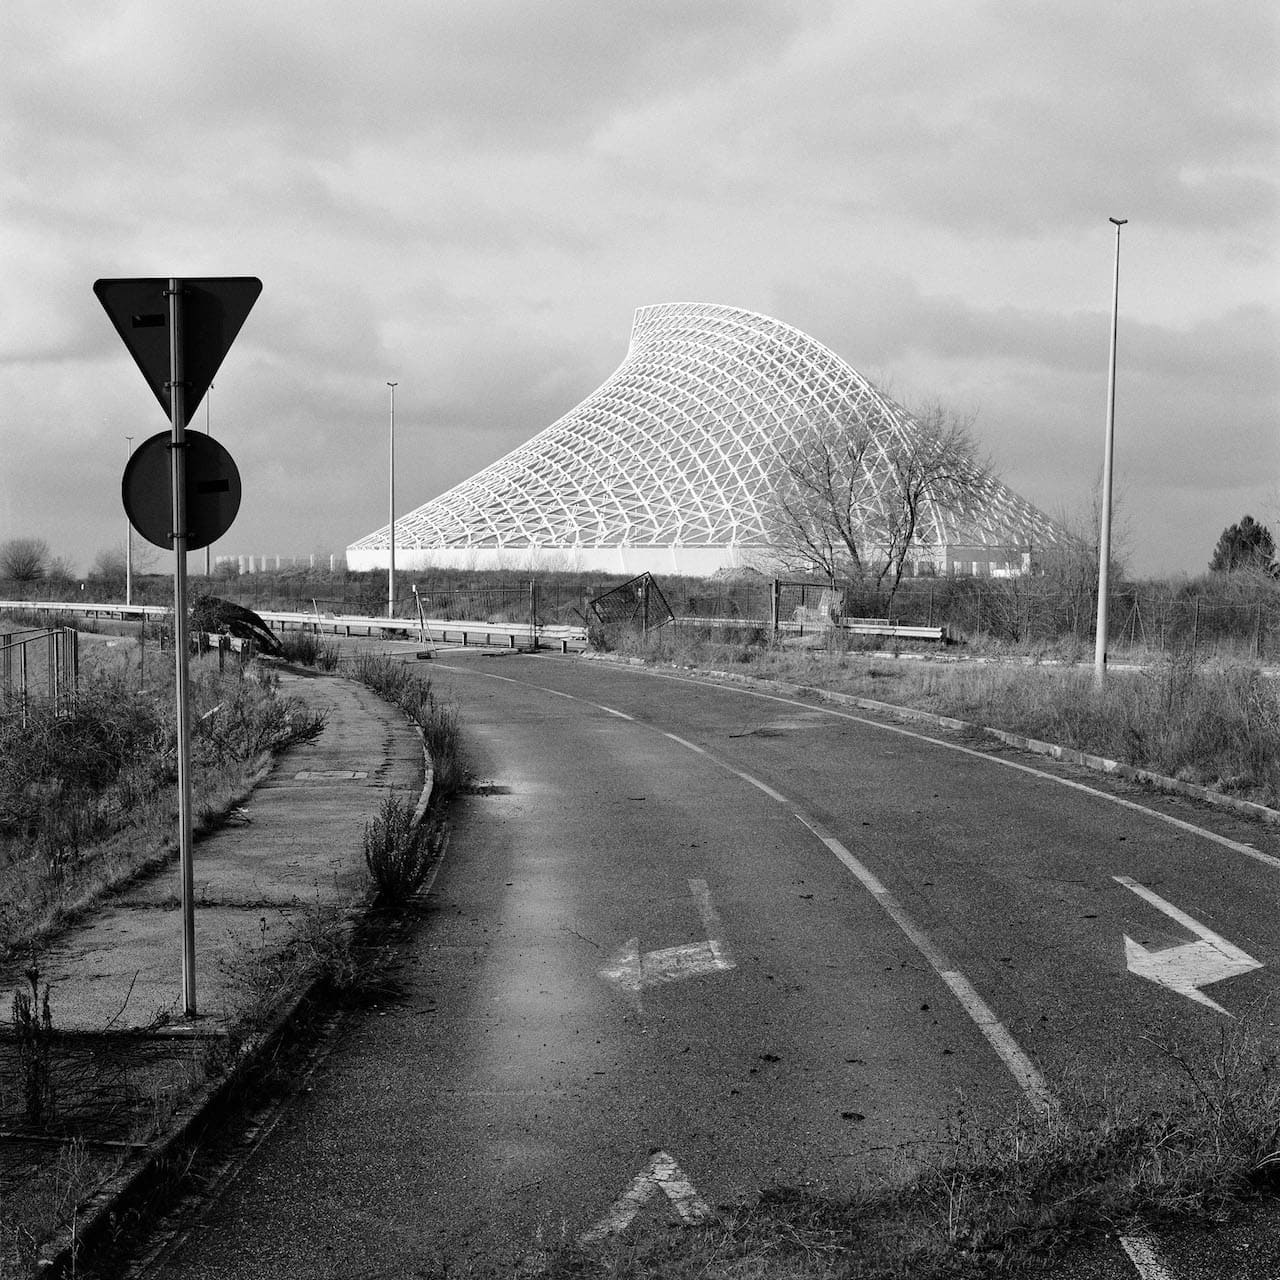 Manuel Cicchetti, ROMA (2022), Torvergata, Città dello Sport, “Vela” di Santiago Calatrava, 30 x 30 cm © Manuel Cicchetti